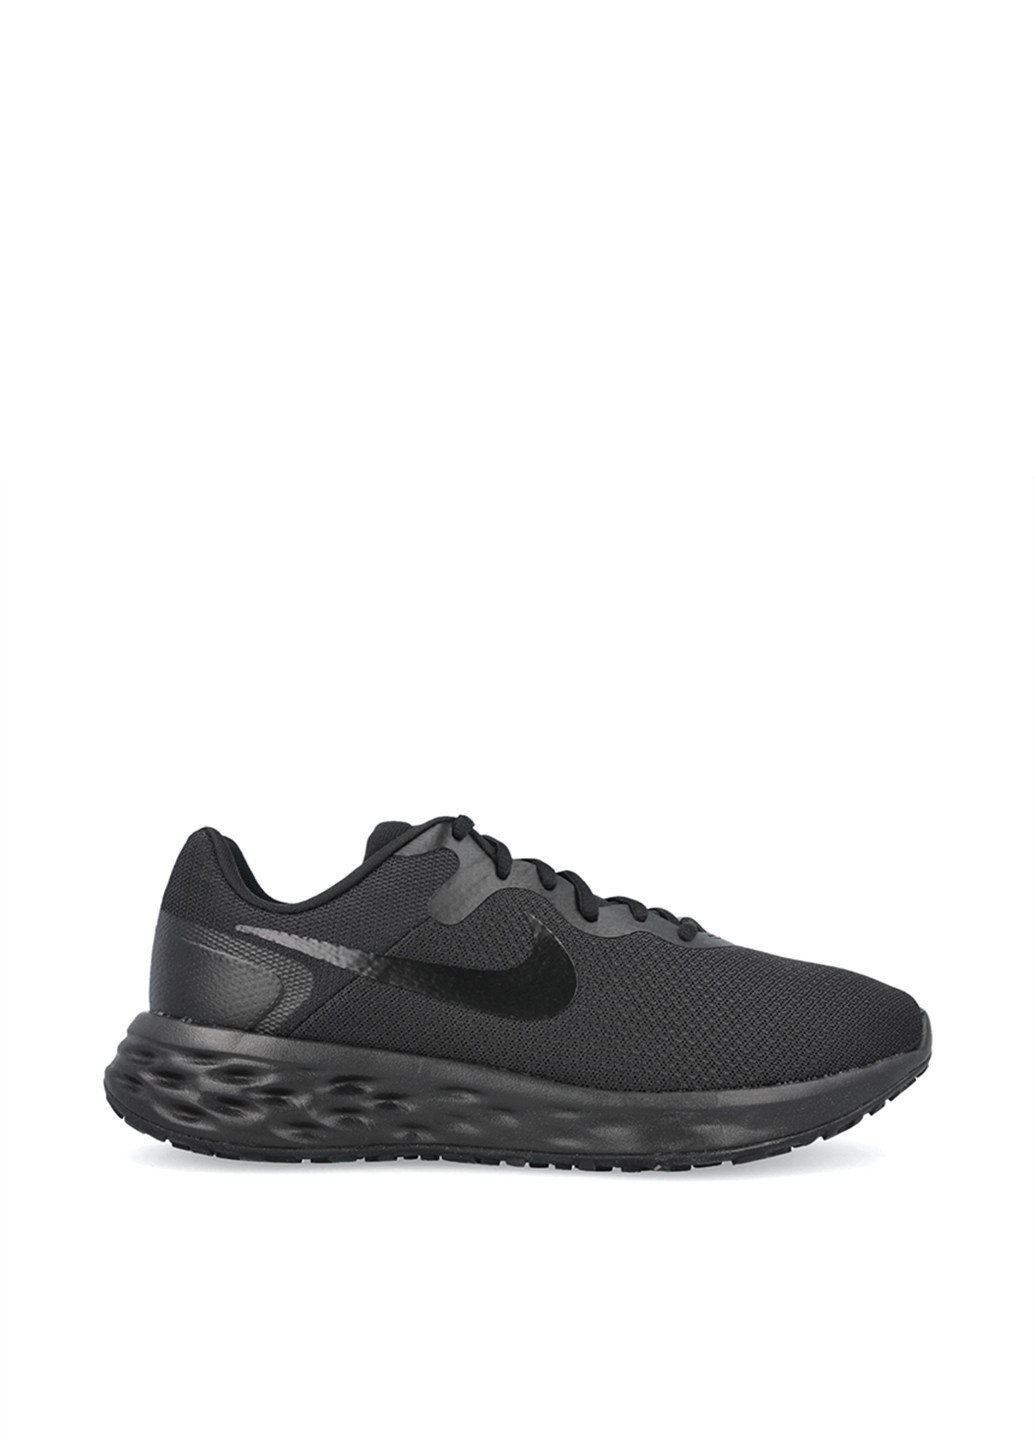 Черные демисезонные кроссовки Nike Revolution 6 4E